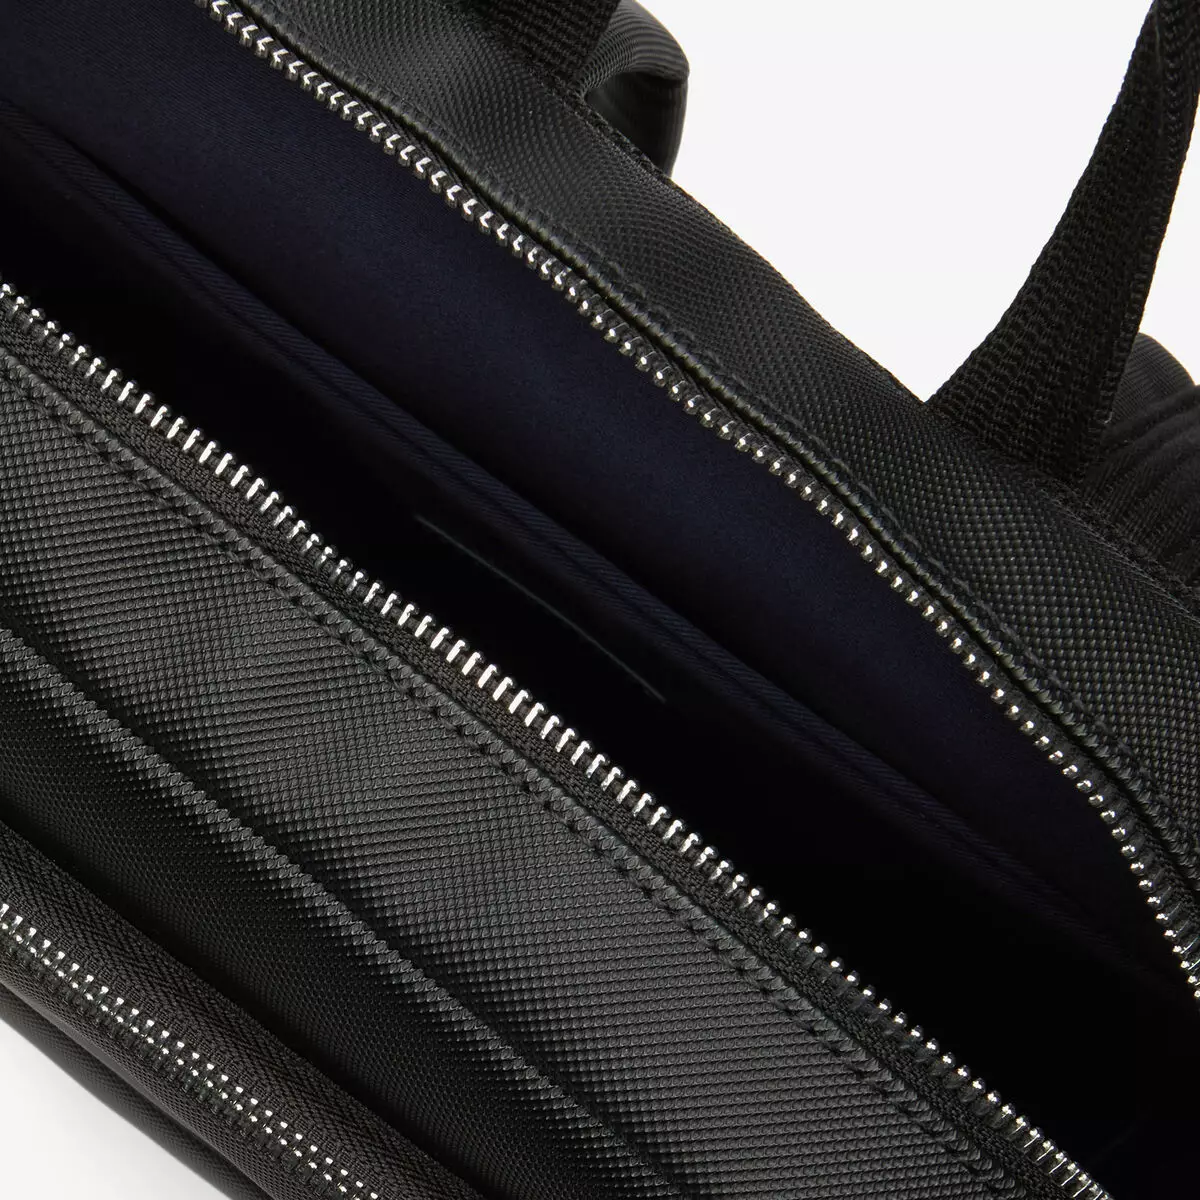 กระเป๋าเป้ LACOSTE: สตรีและบุรุษ, สีดำและสีน้ำเงินสีเขียว, กระเป๋าเป้หนังอื่น ๆ 15408_20